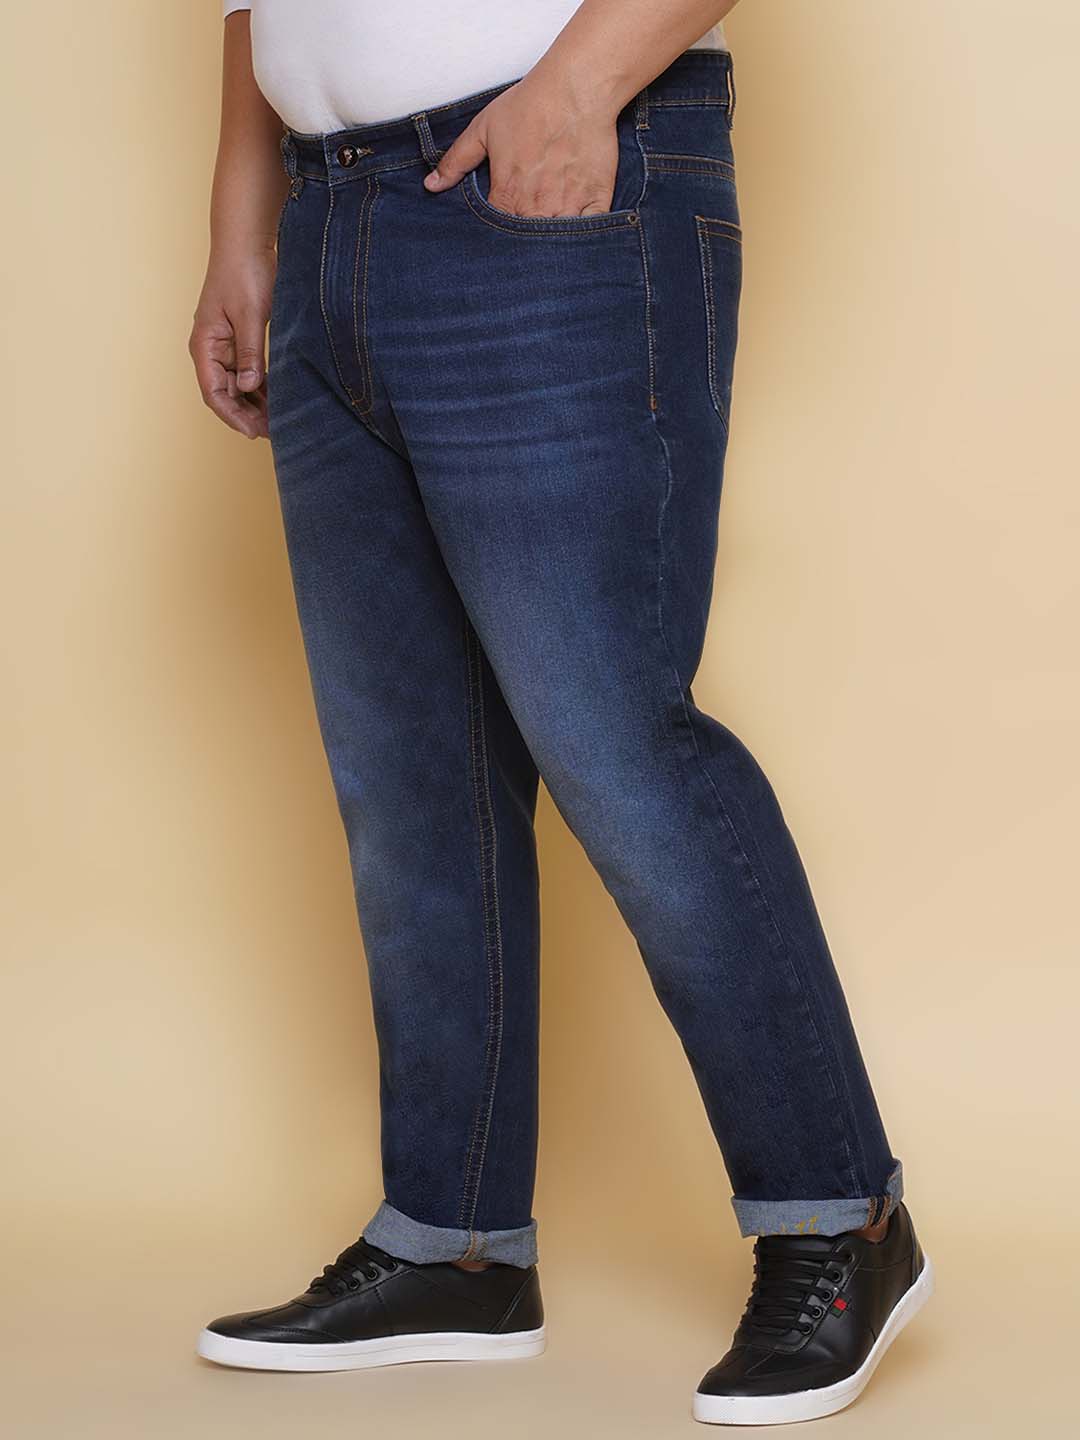 bottomwear/jeans/PJPJ60102/pjpj60102-4.jpg